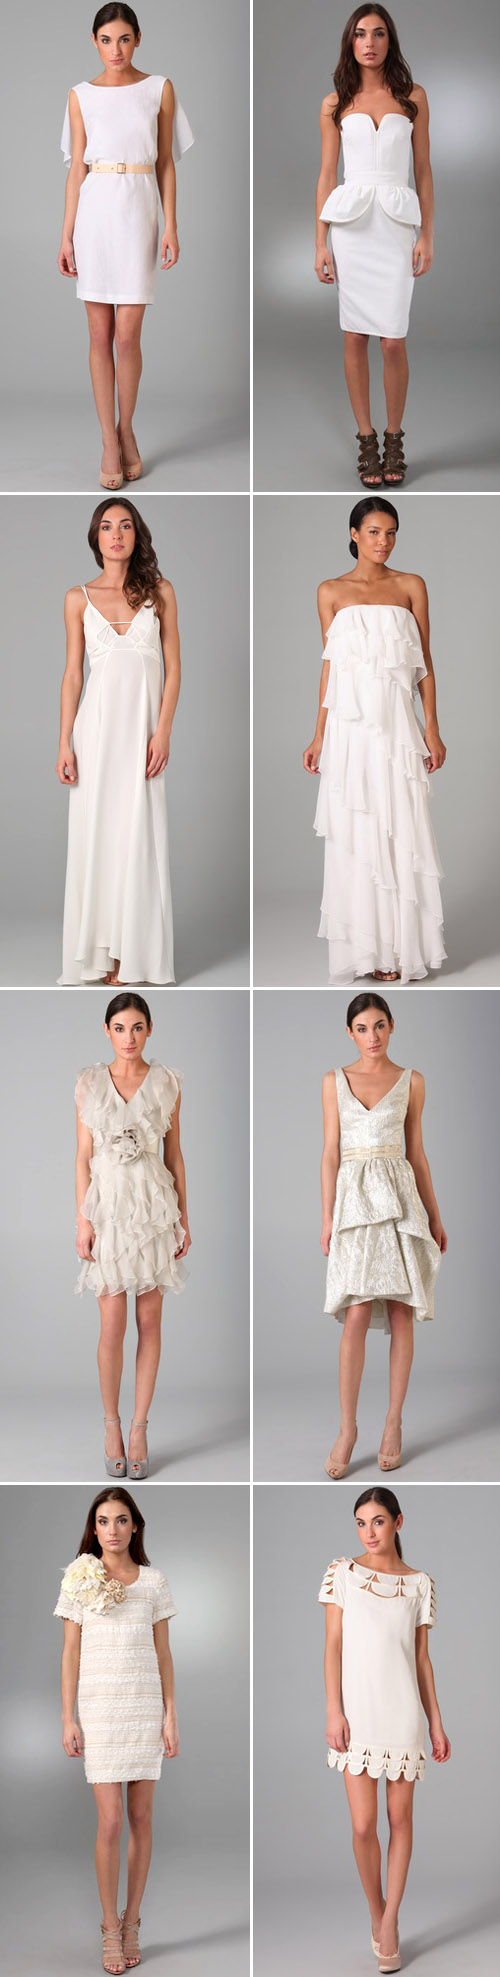 Shopbop.com's new wedding fashion boutique